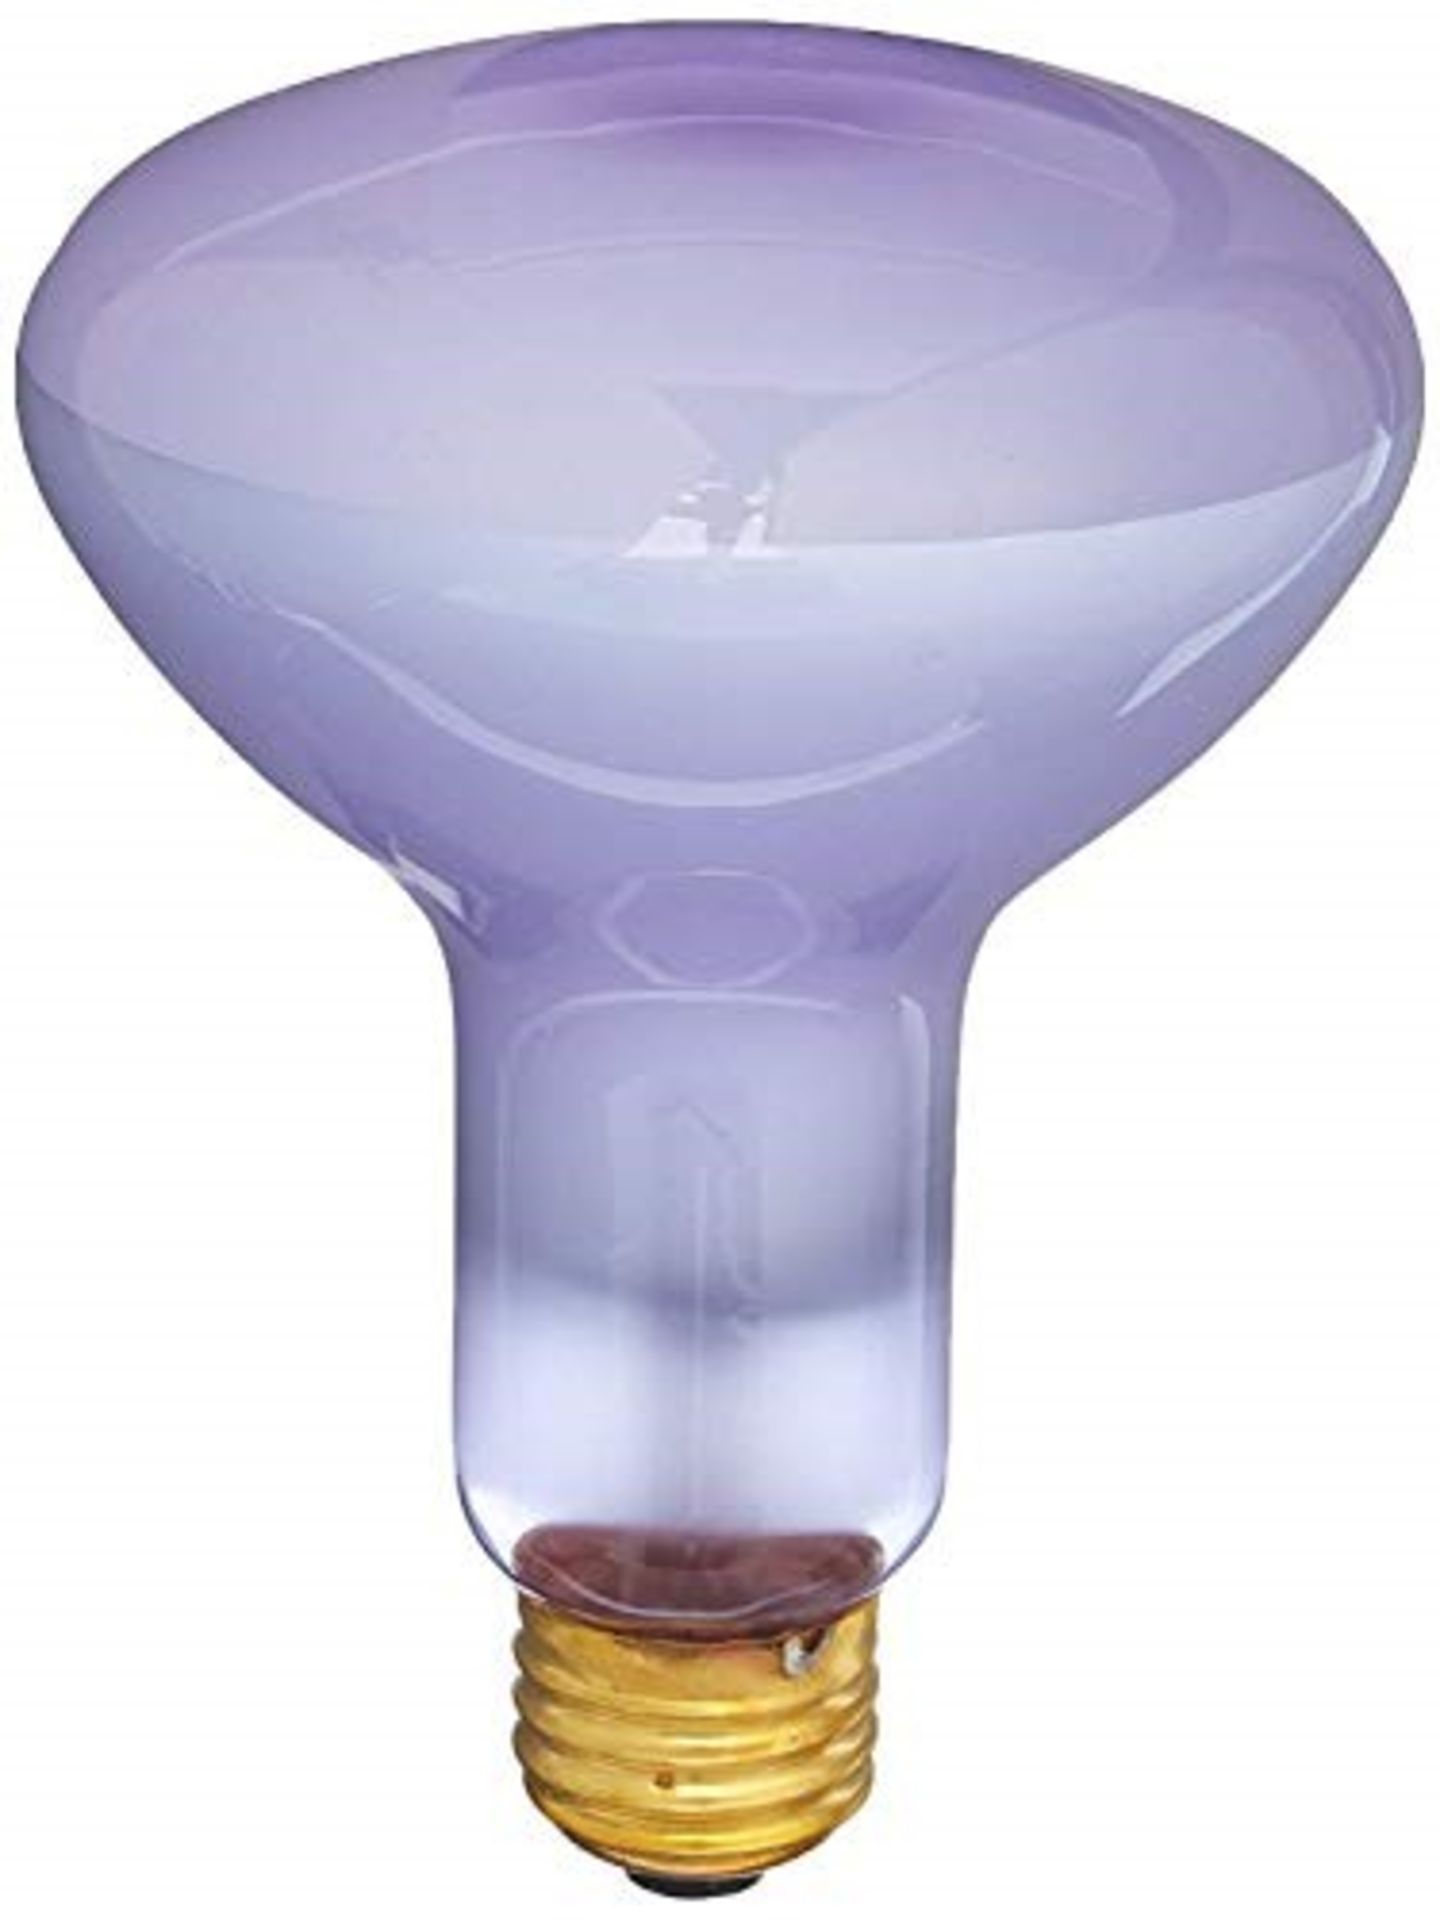 Exo Terra Daylight Basking Spot Bulb 150 W - Image 3 of 4